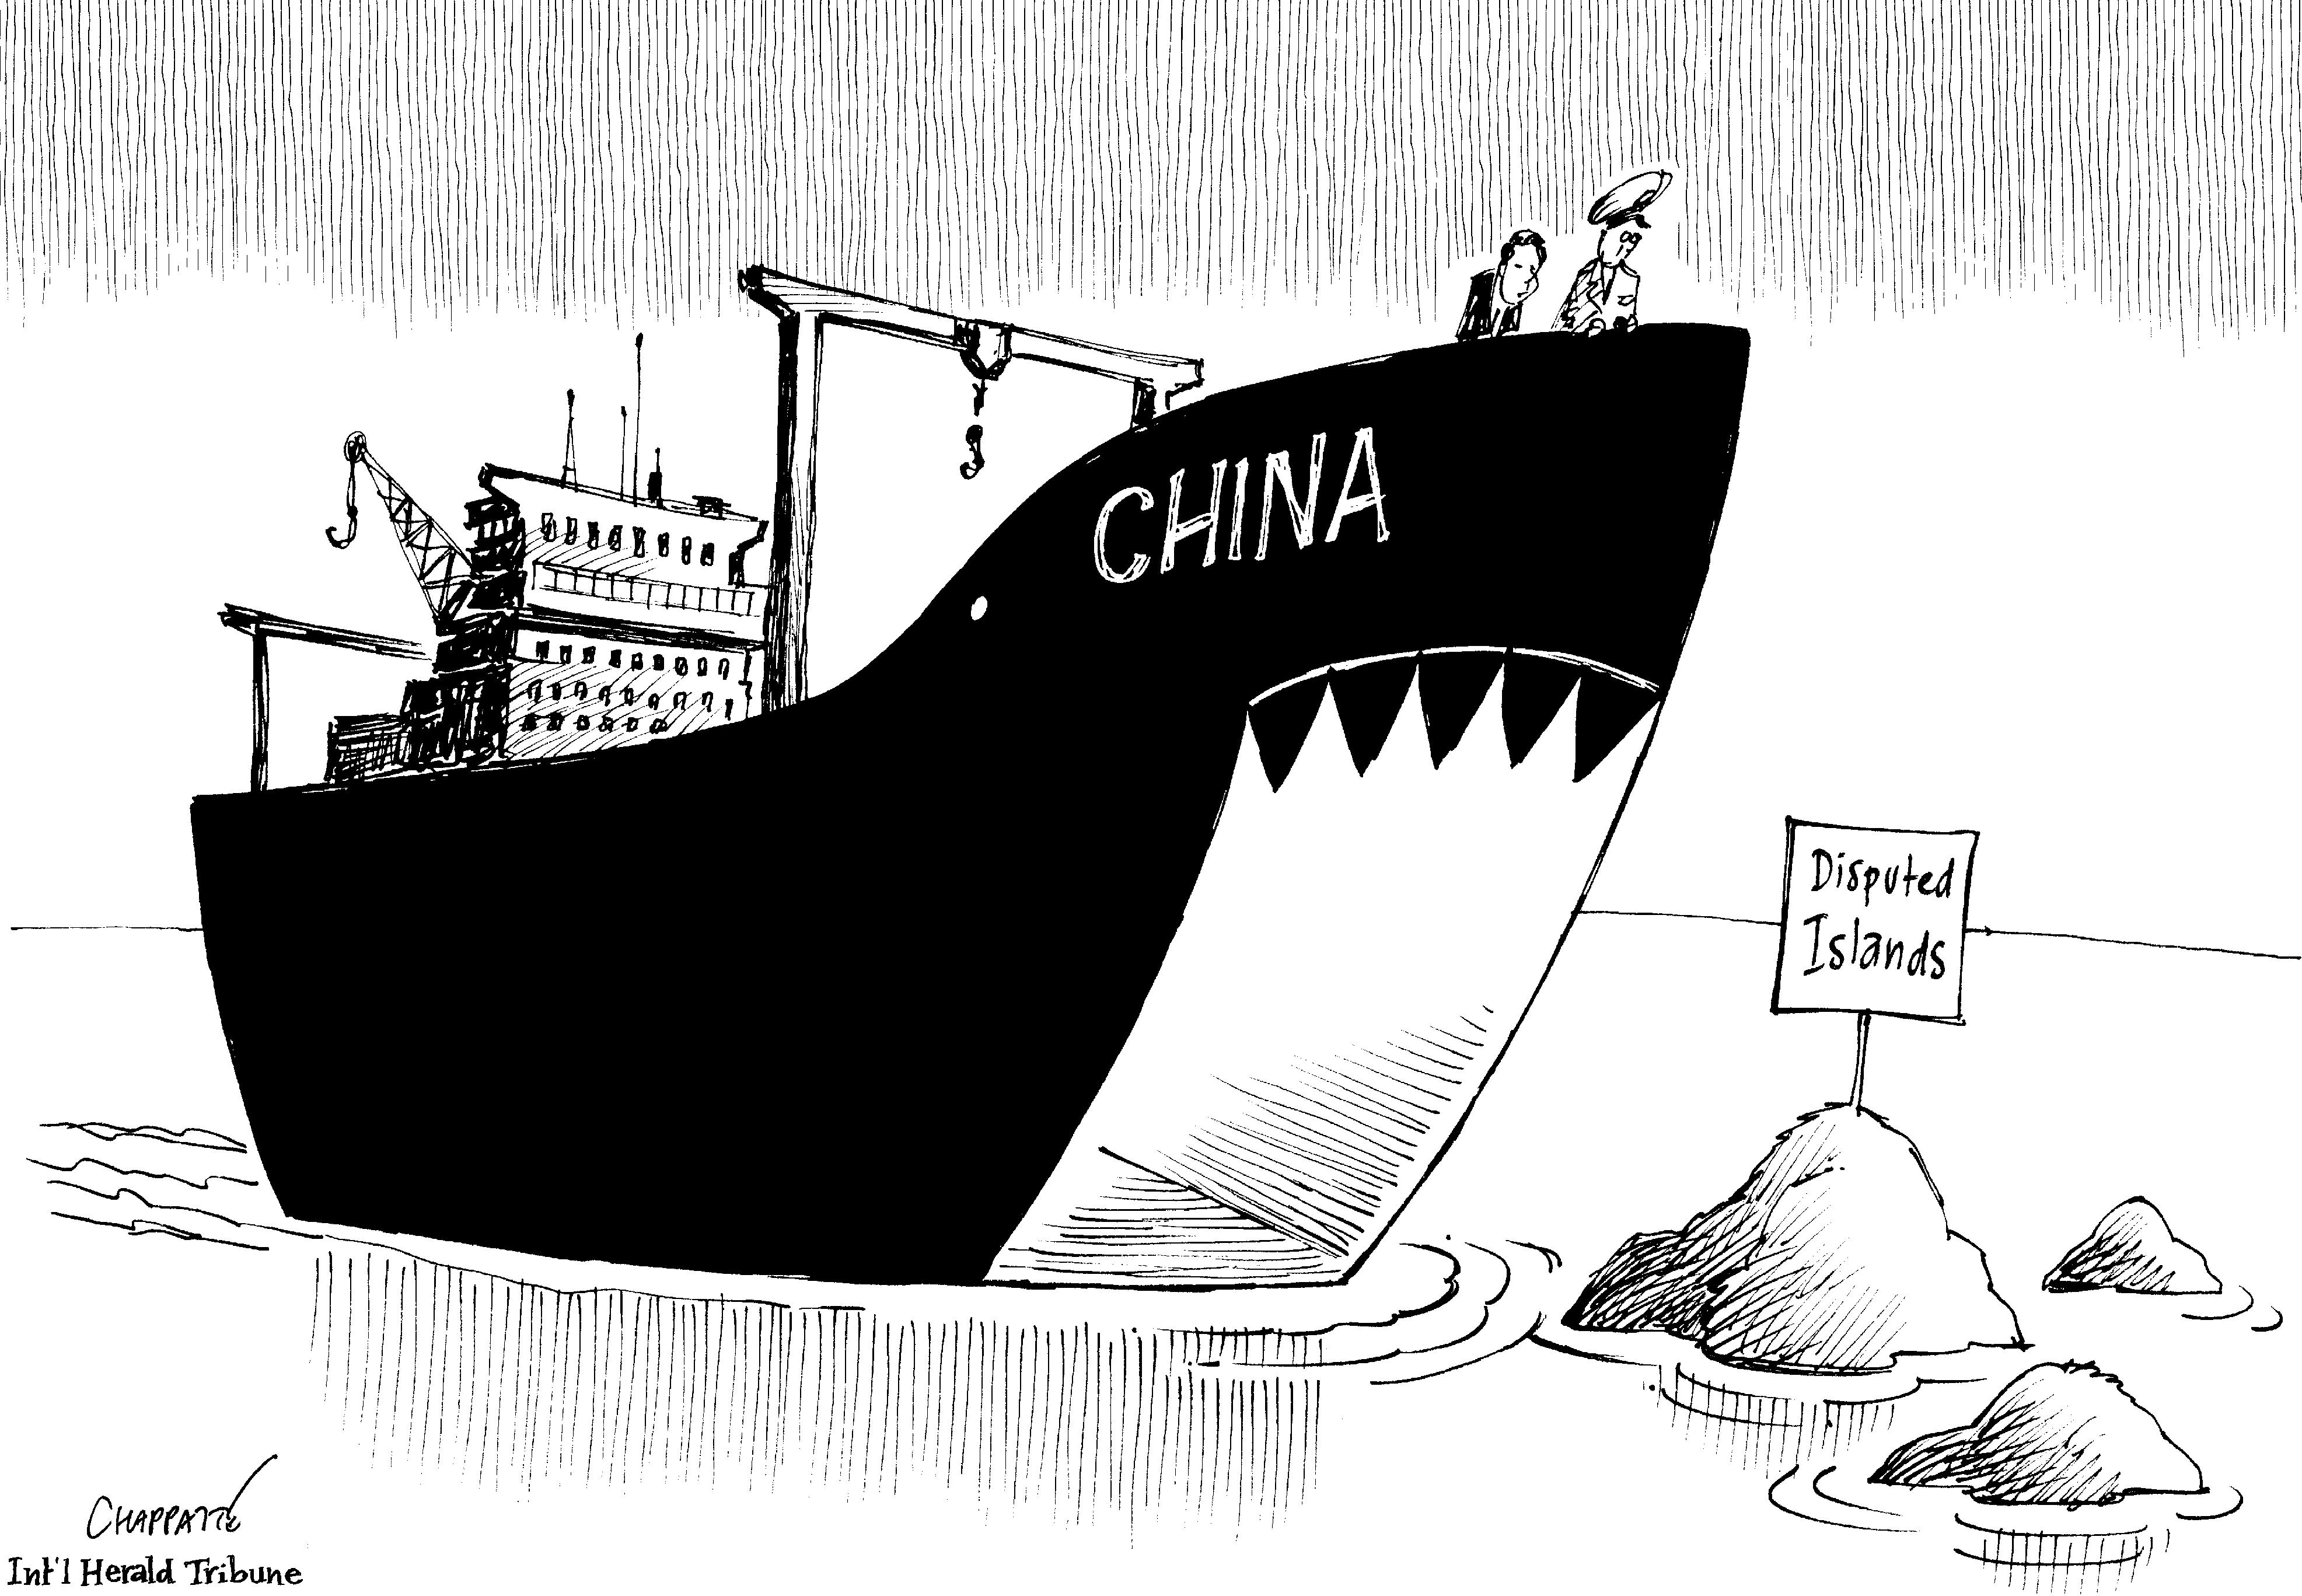 South China Sea's disputes